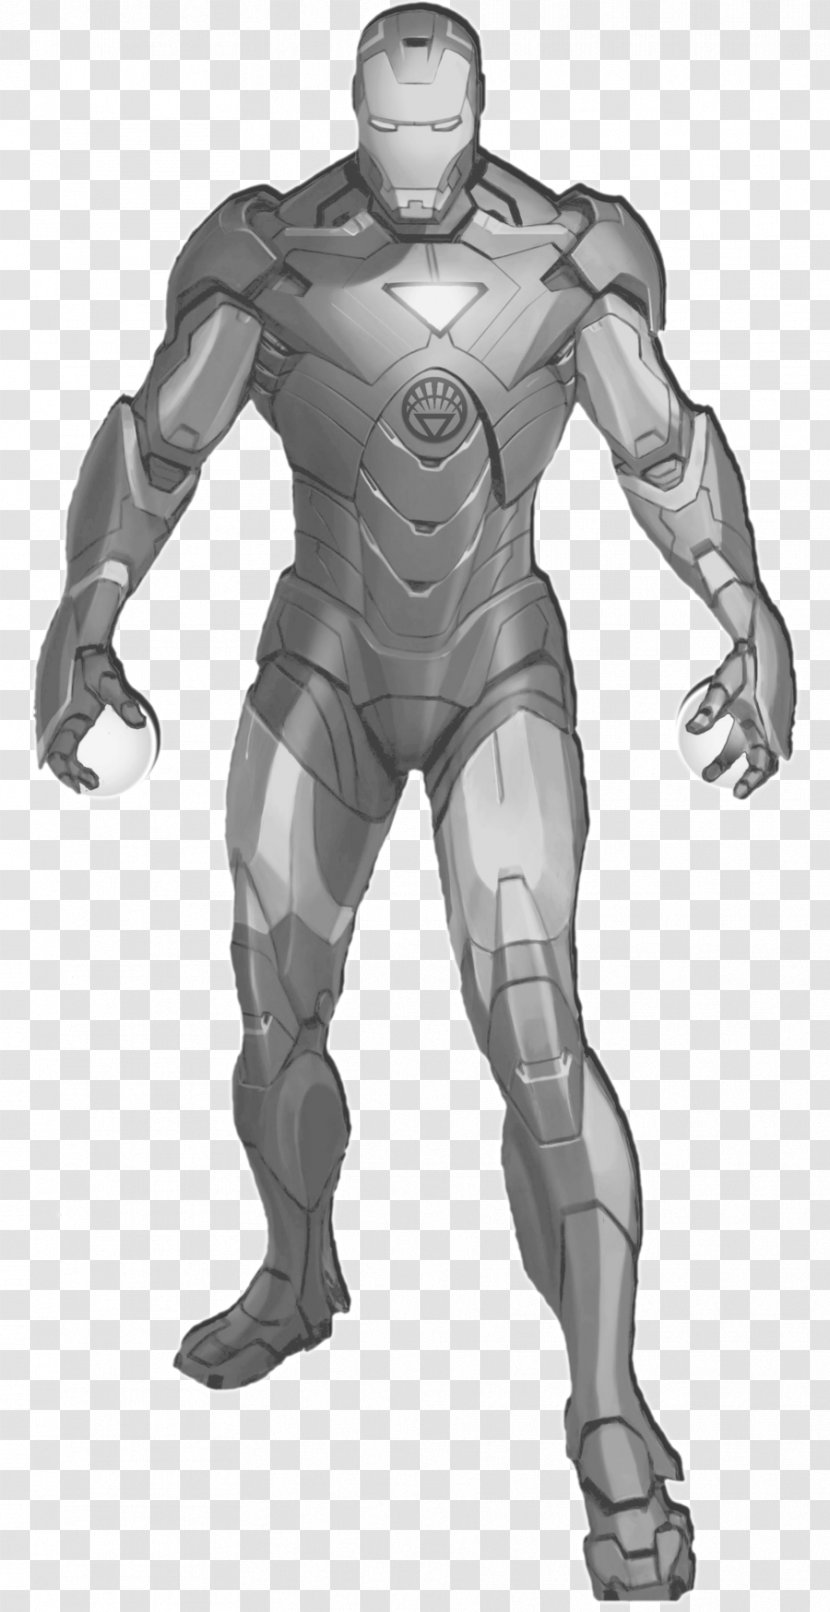 Iron Man Hulk Sinestro White Lantern Corps Superhero - Frame Transparent PNG